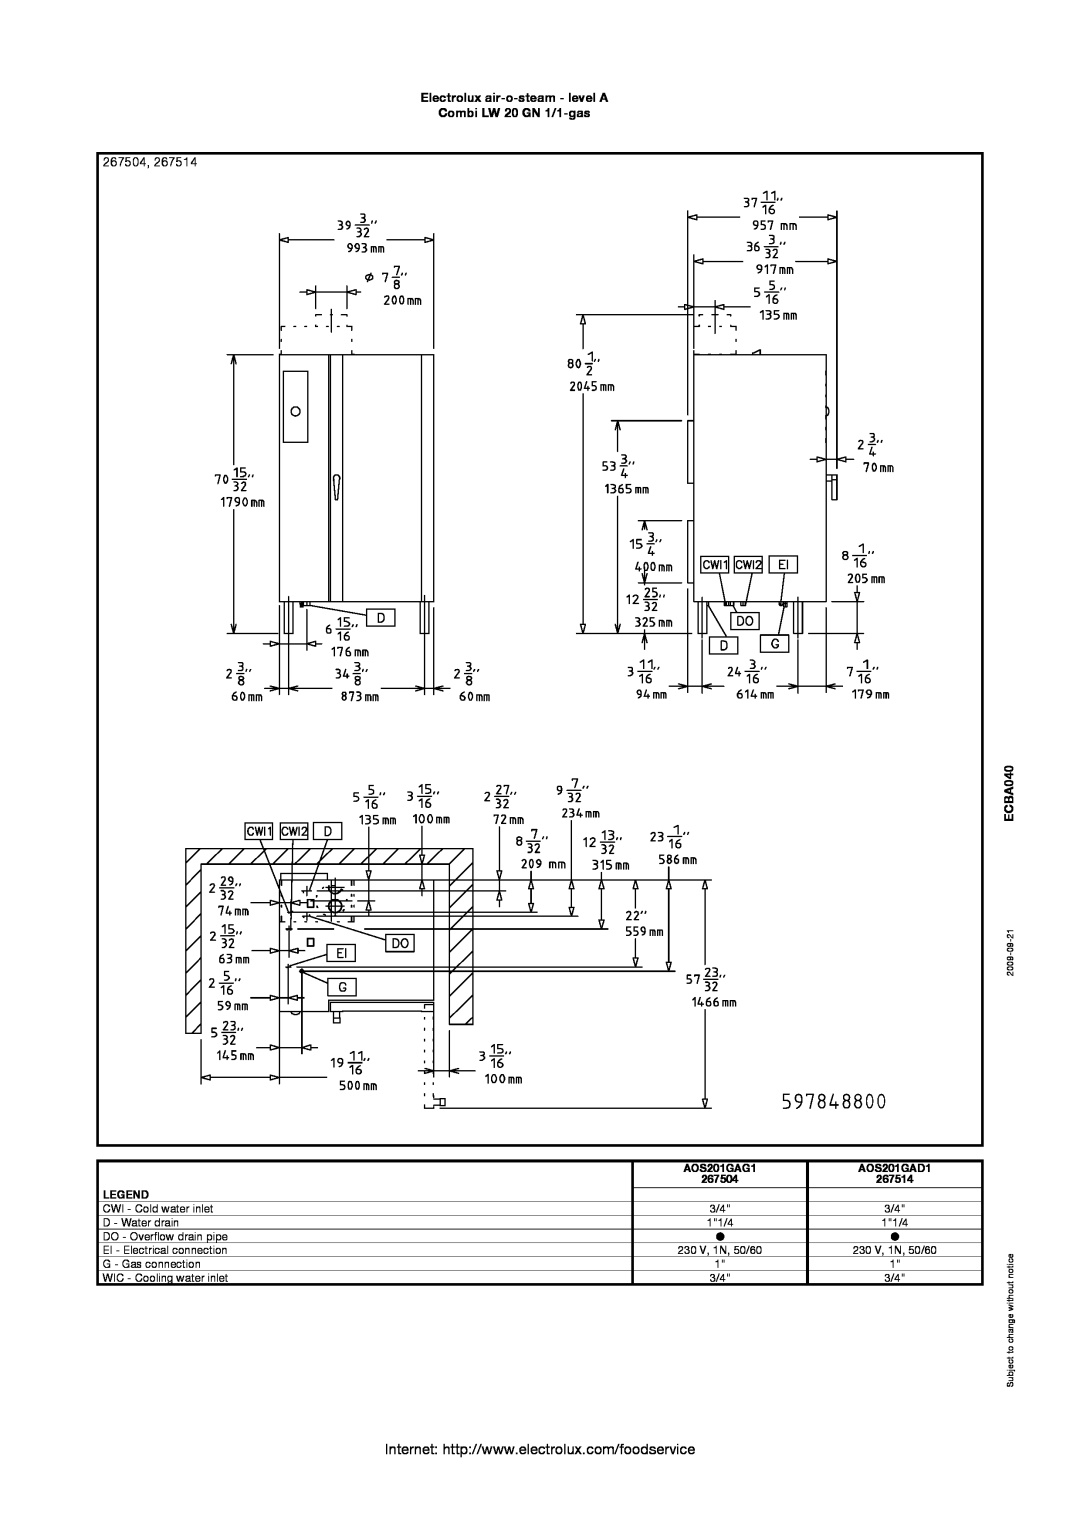 Electrolux AOS201GAG1 manual 267504, Electrolux air-o-steam - level A Combi LW 20 GN 1/1-gas, ECBA040, AOS201GAD1, 267514 